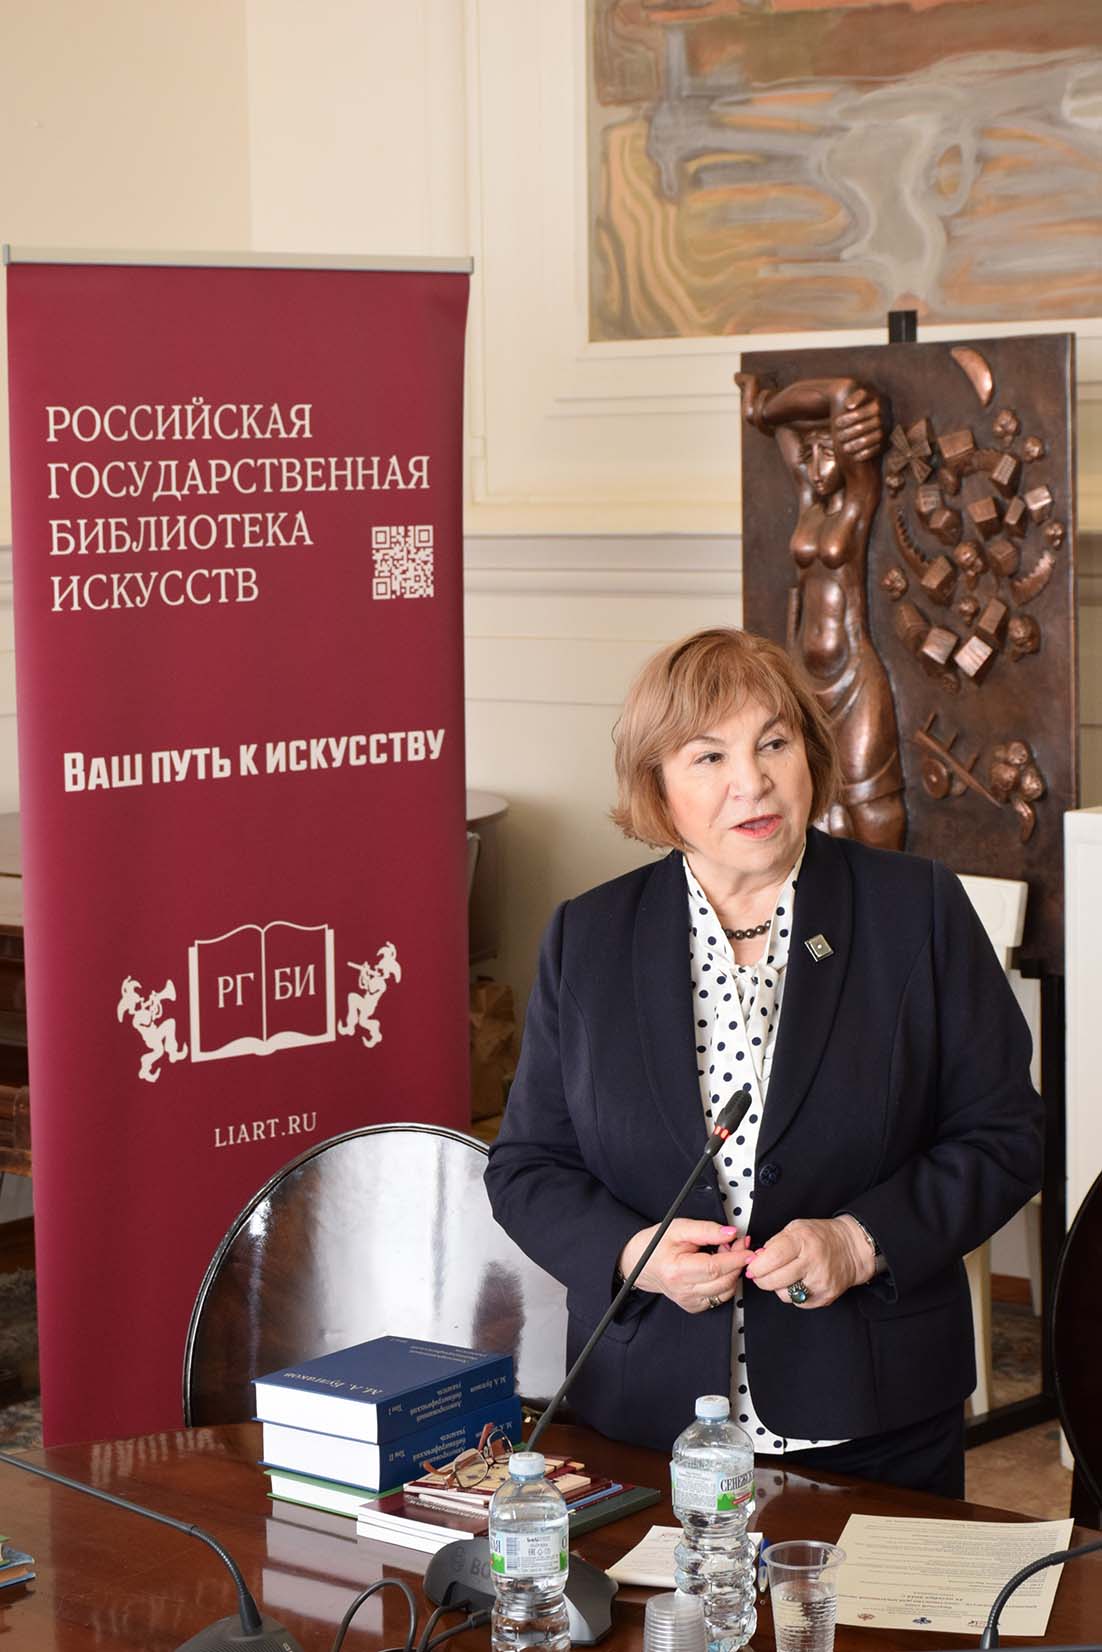 Круглый стол, посвященный 100-летию РГБИ, прошел в Российской академии художеств 